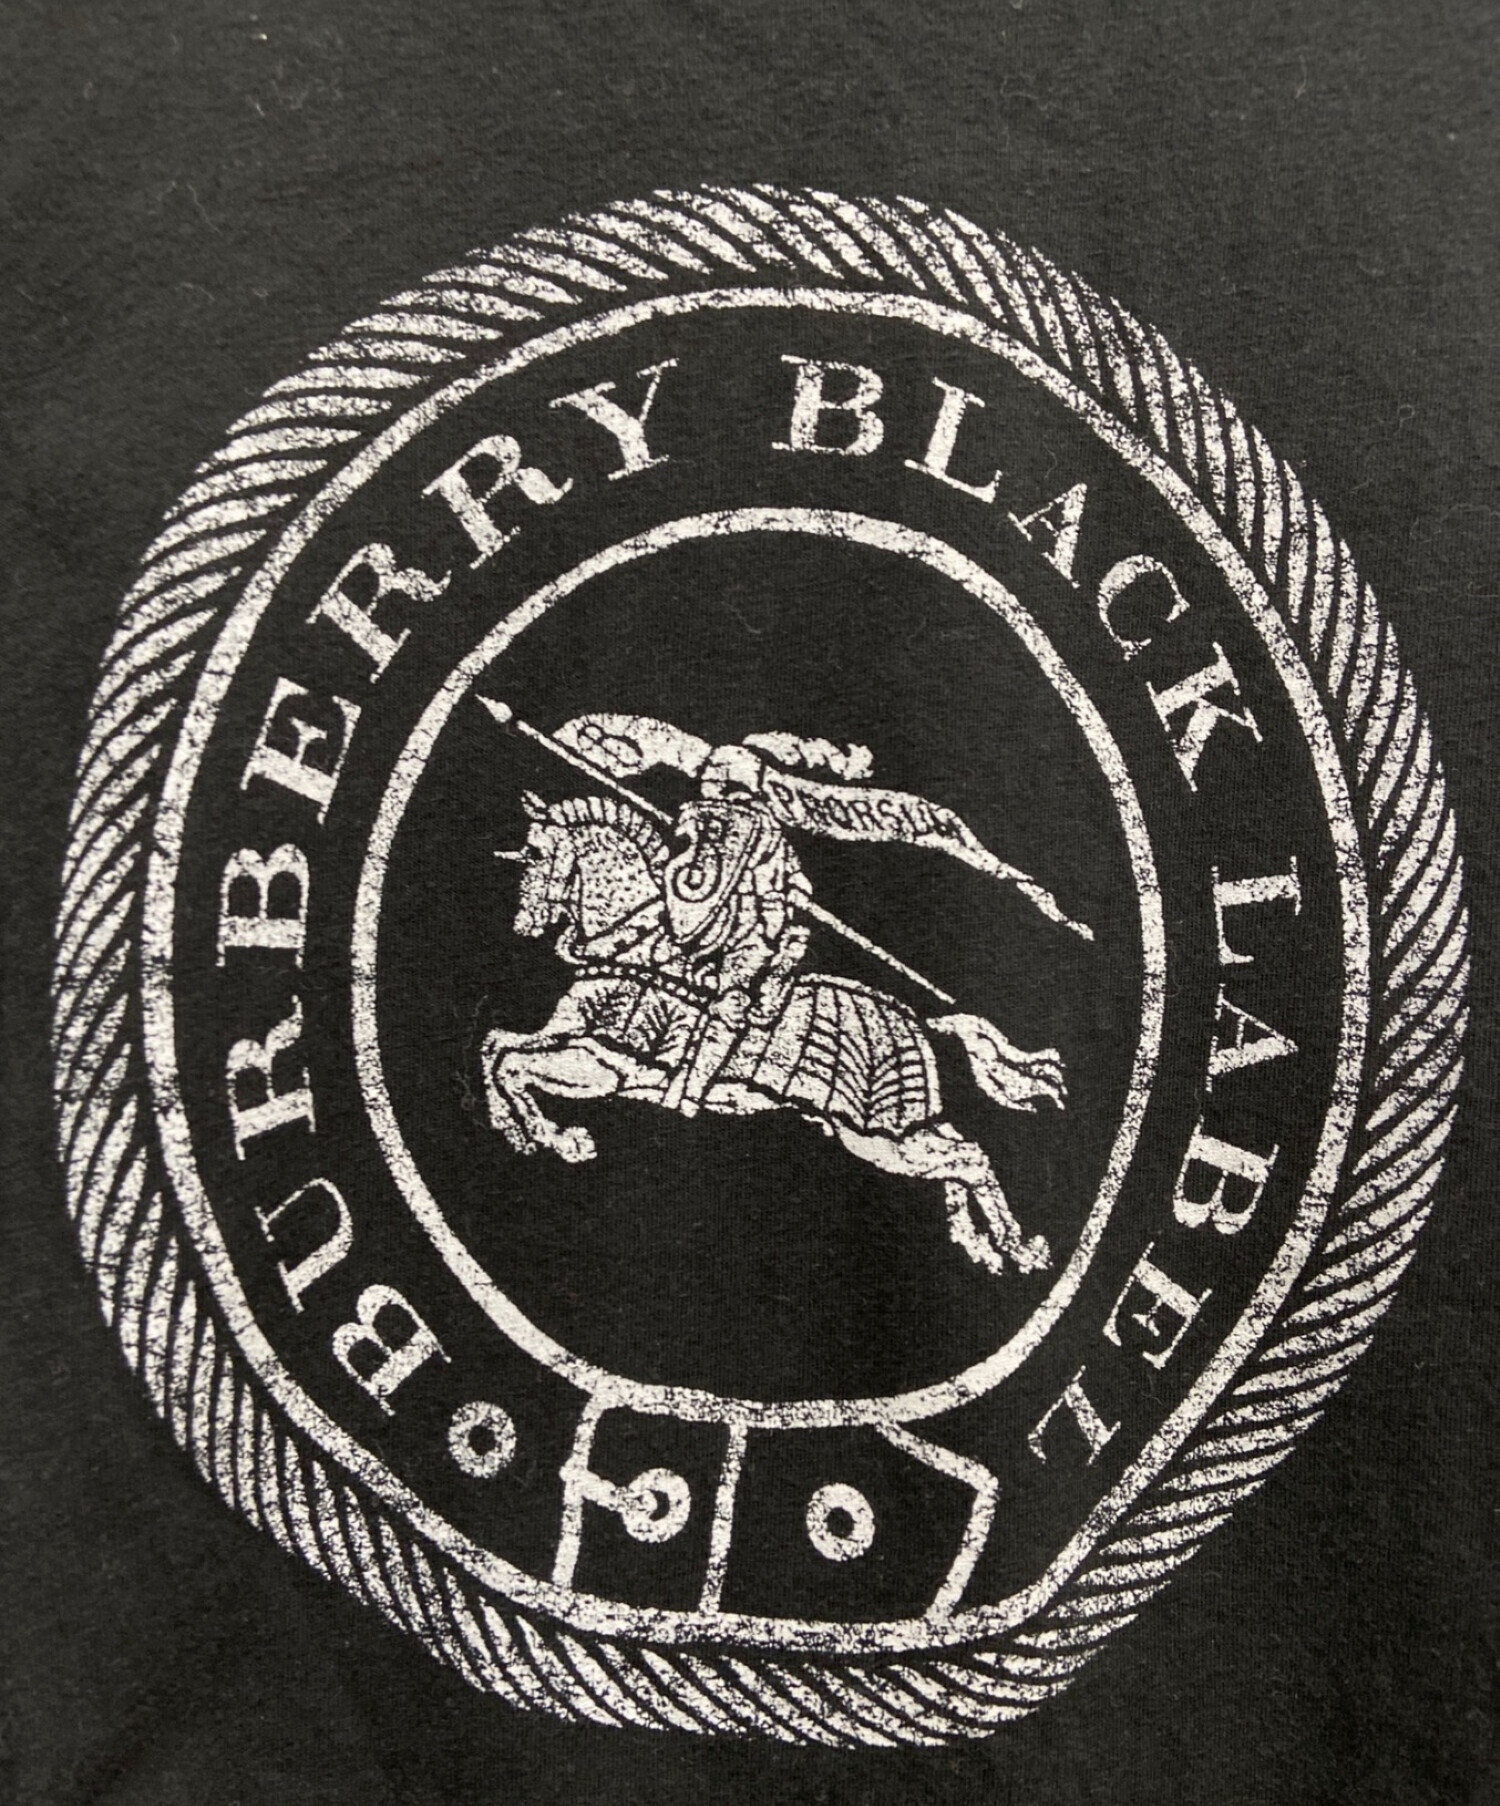 BURBERRY BLACK LABEL (バーバリーブラックレーベル) ロゴプリントTシャツ ブラック サイズ:L